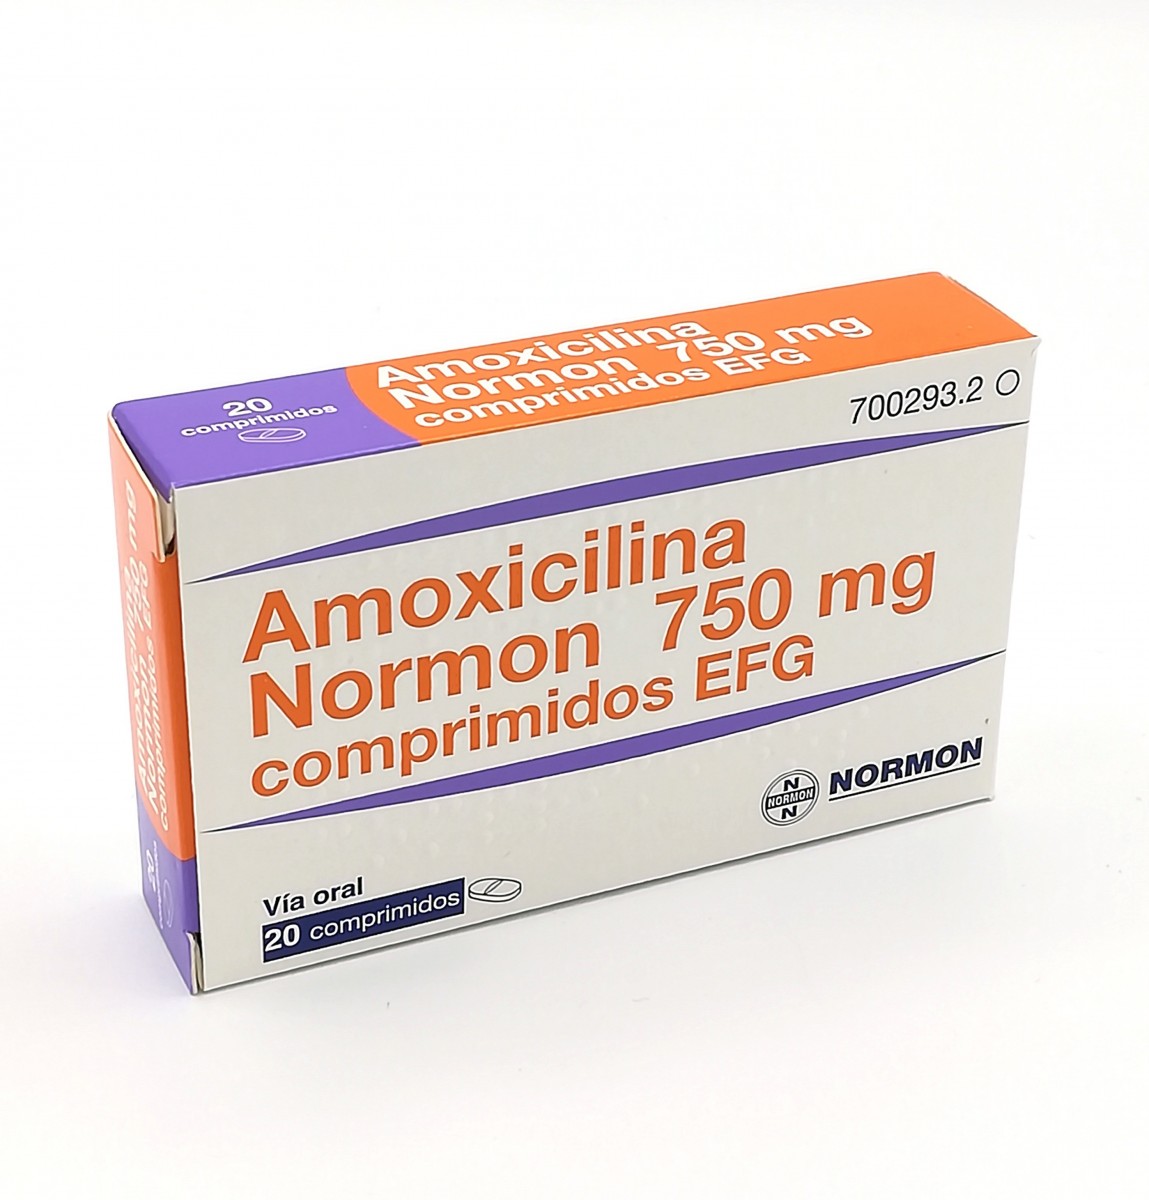 AMOXICILINA NORMON 750 MG COMPRIMIDOS EFG  , 20 comprimidos  fotografía del envase.